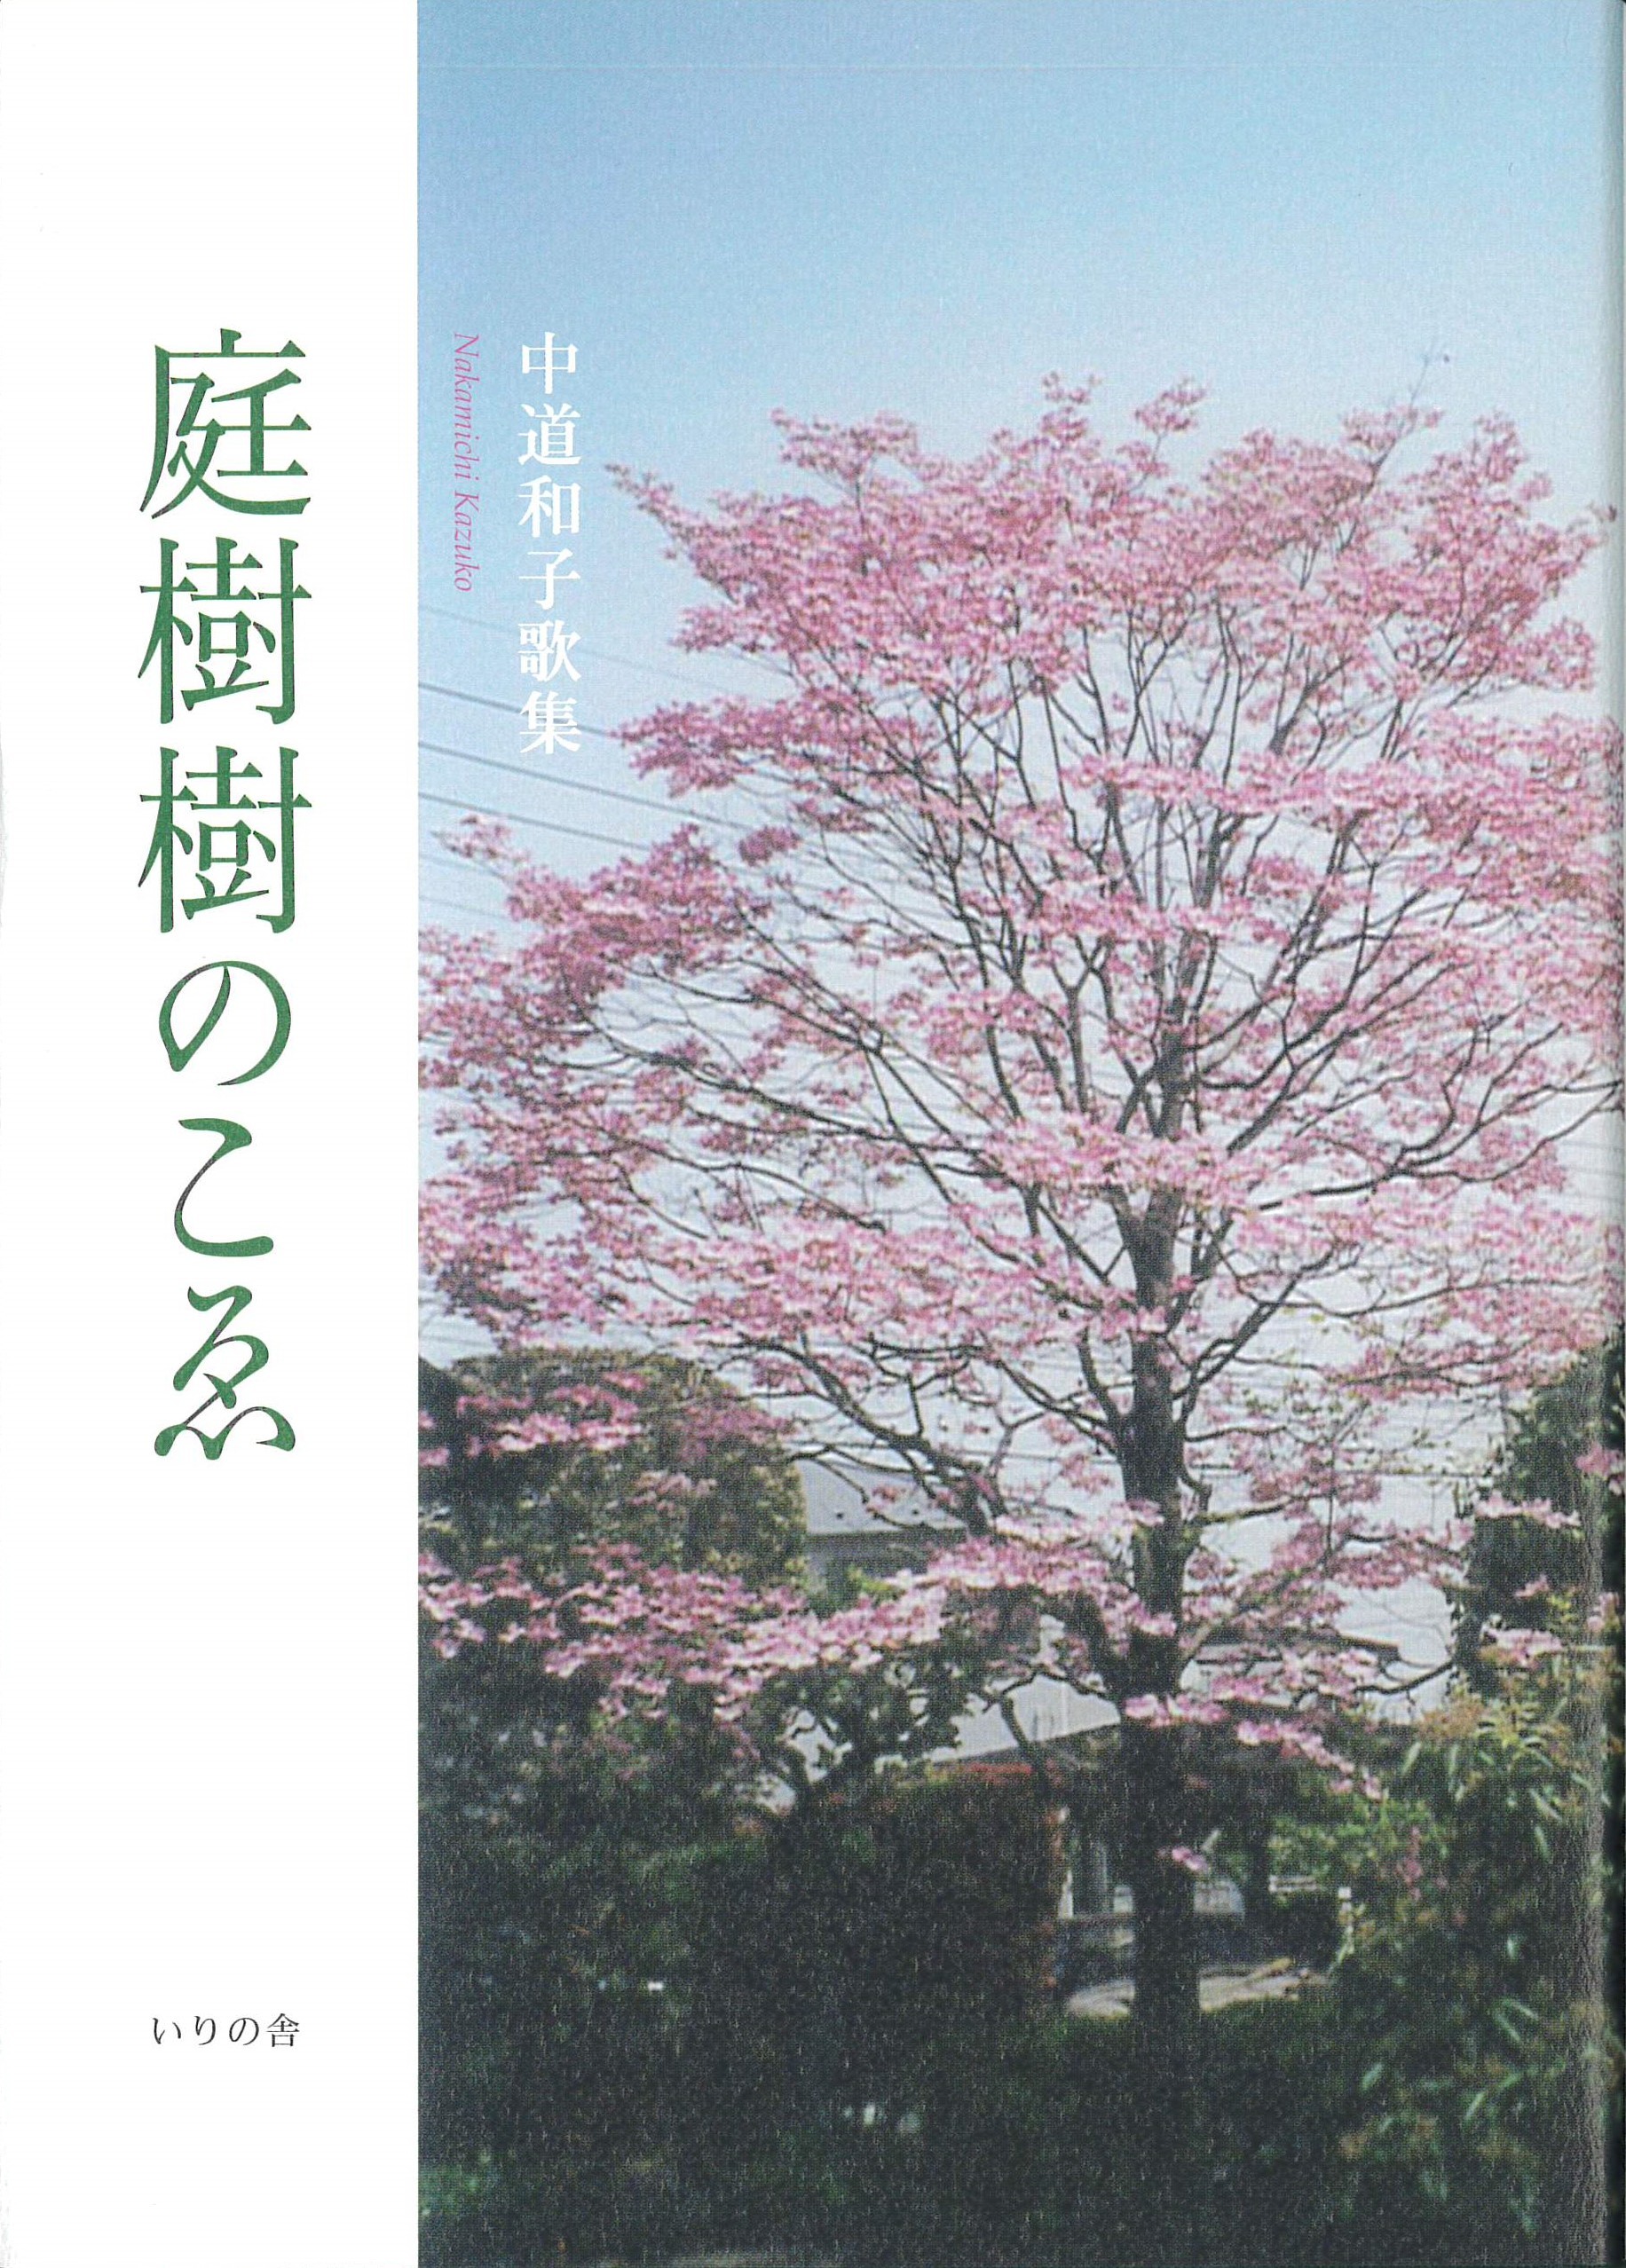 中道和子歌集『庭樹樹のこゑ』